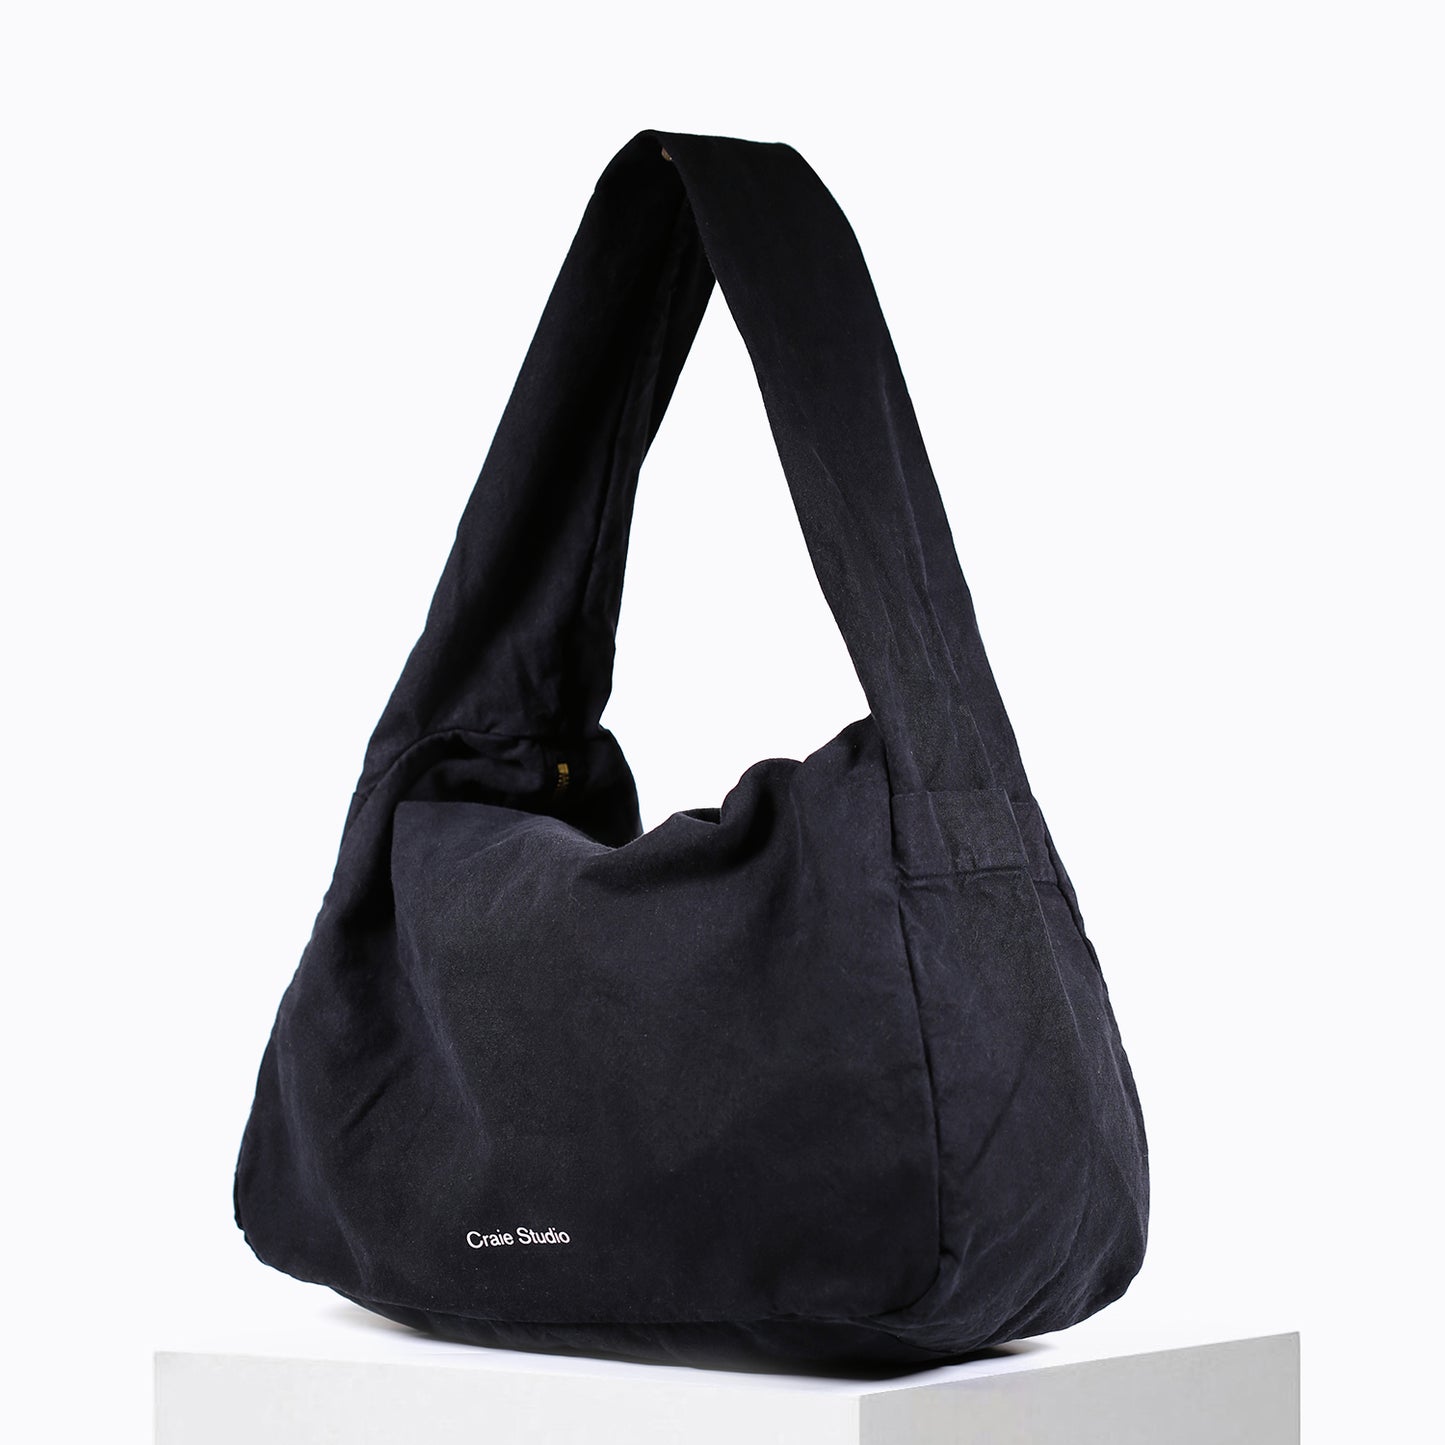 Small Black Hobo Bag